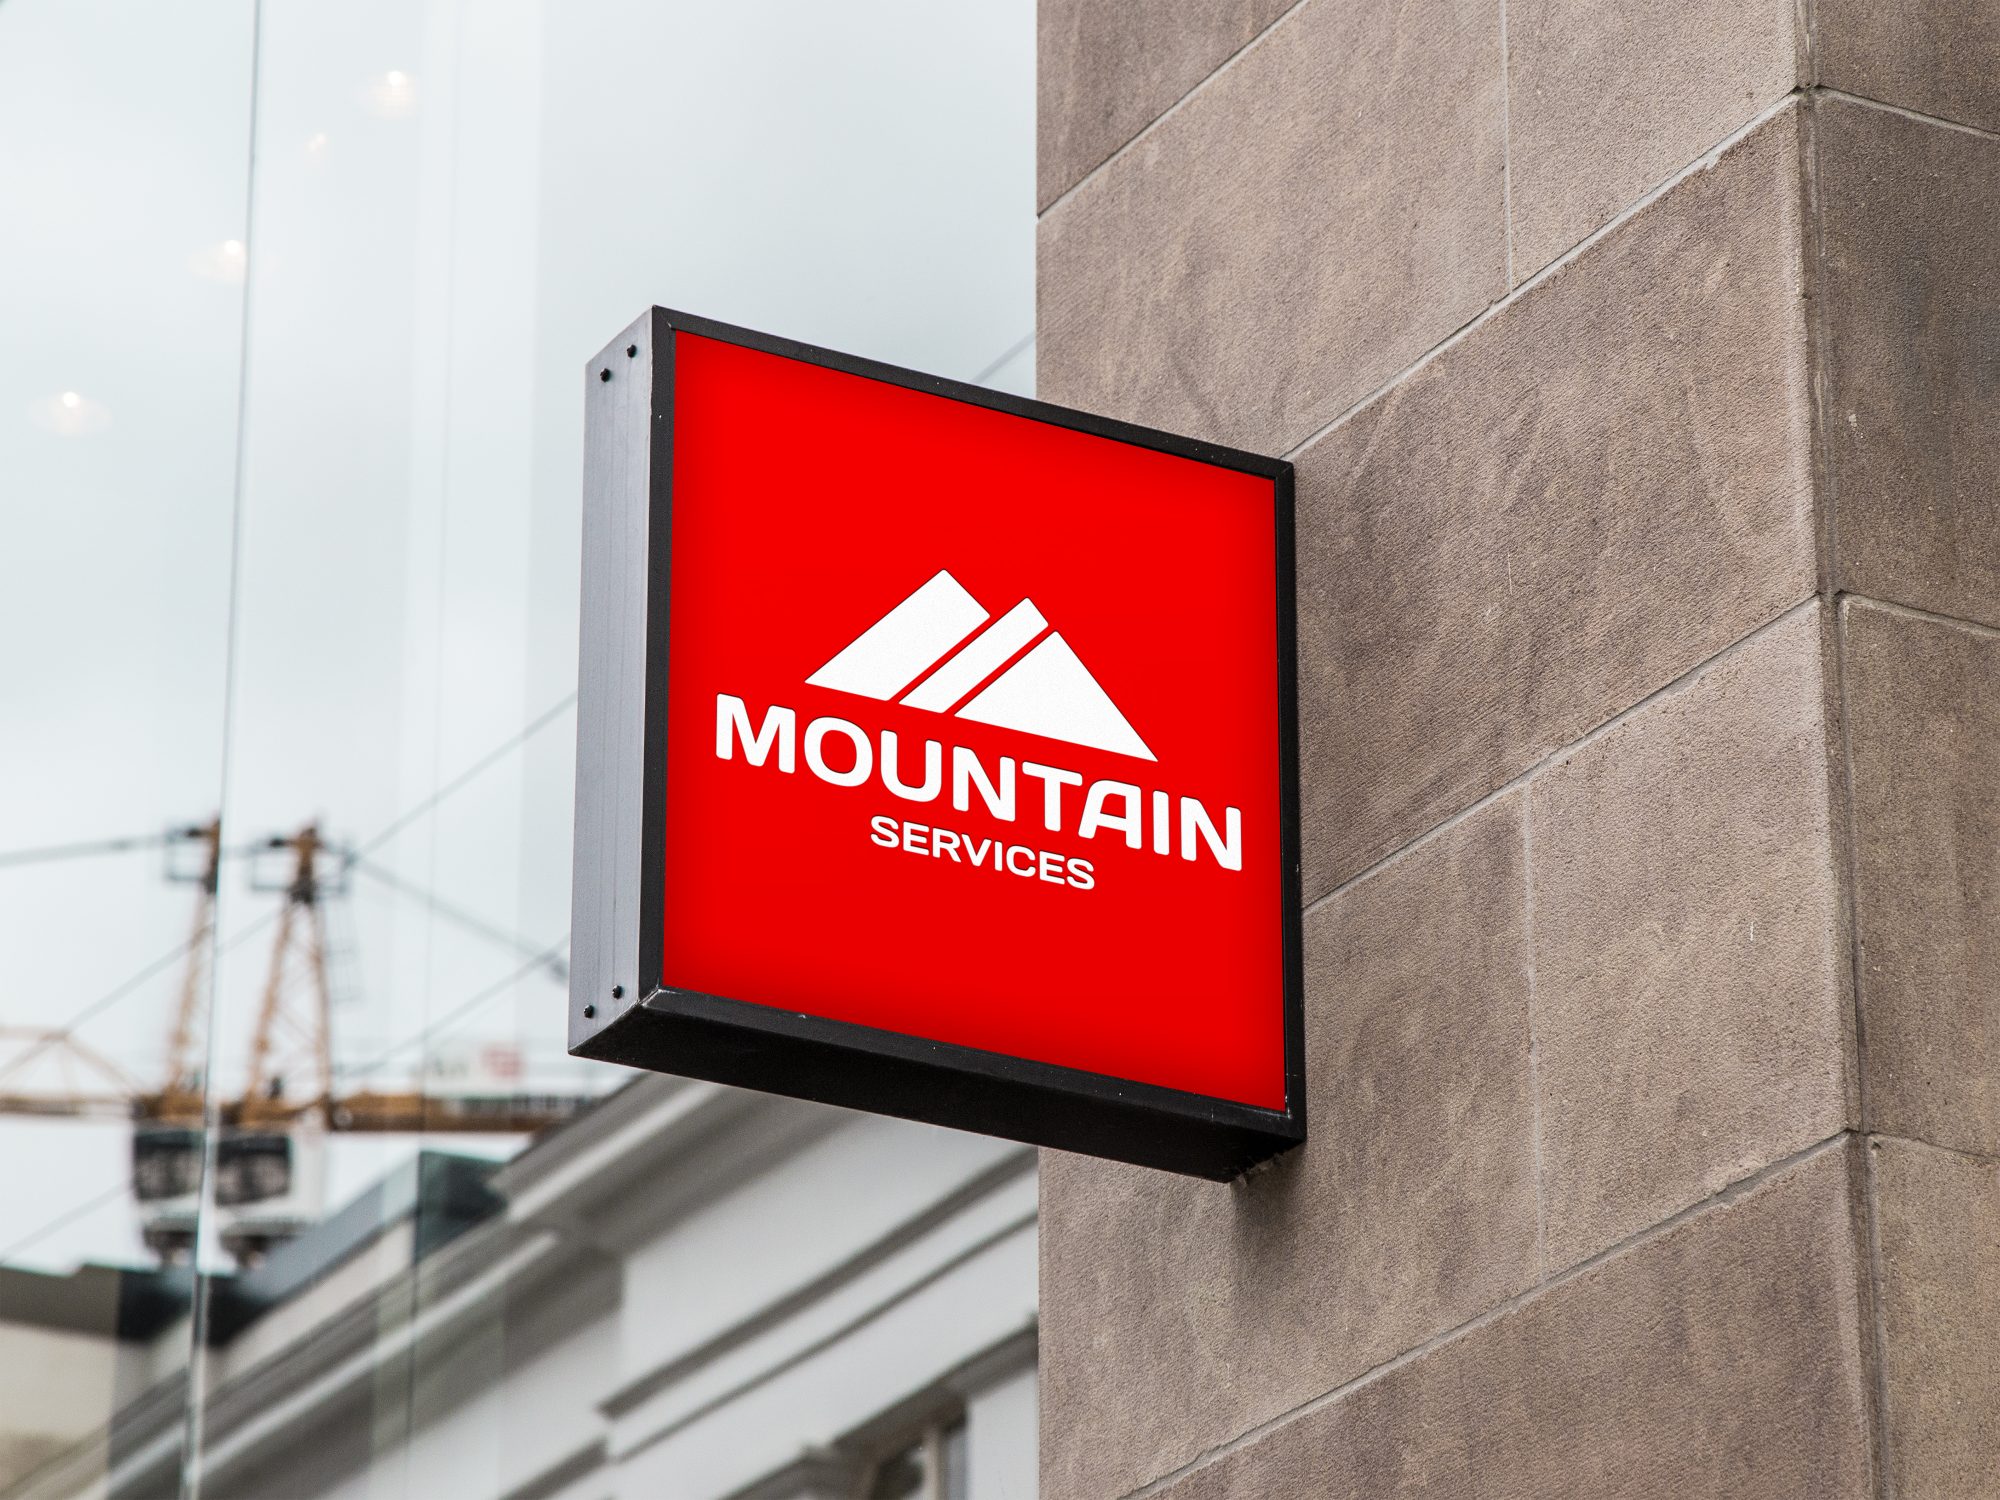 Mountain services